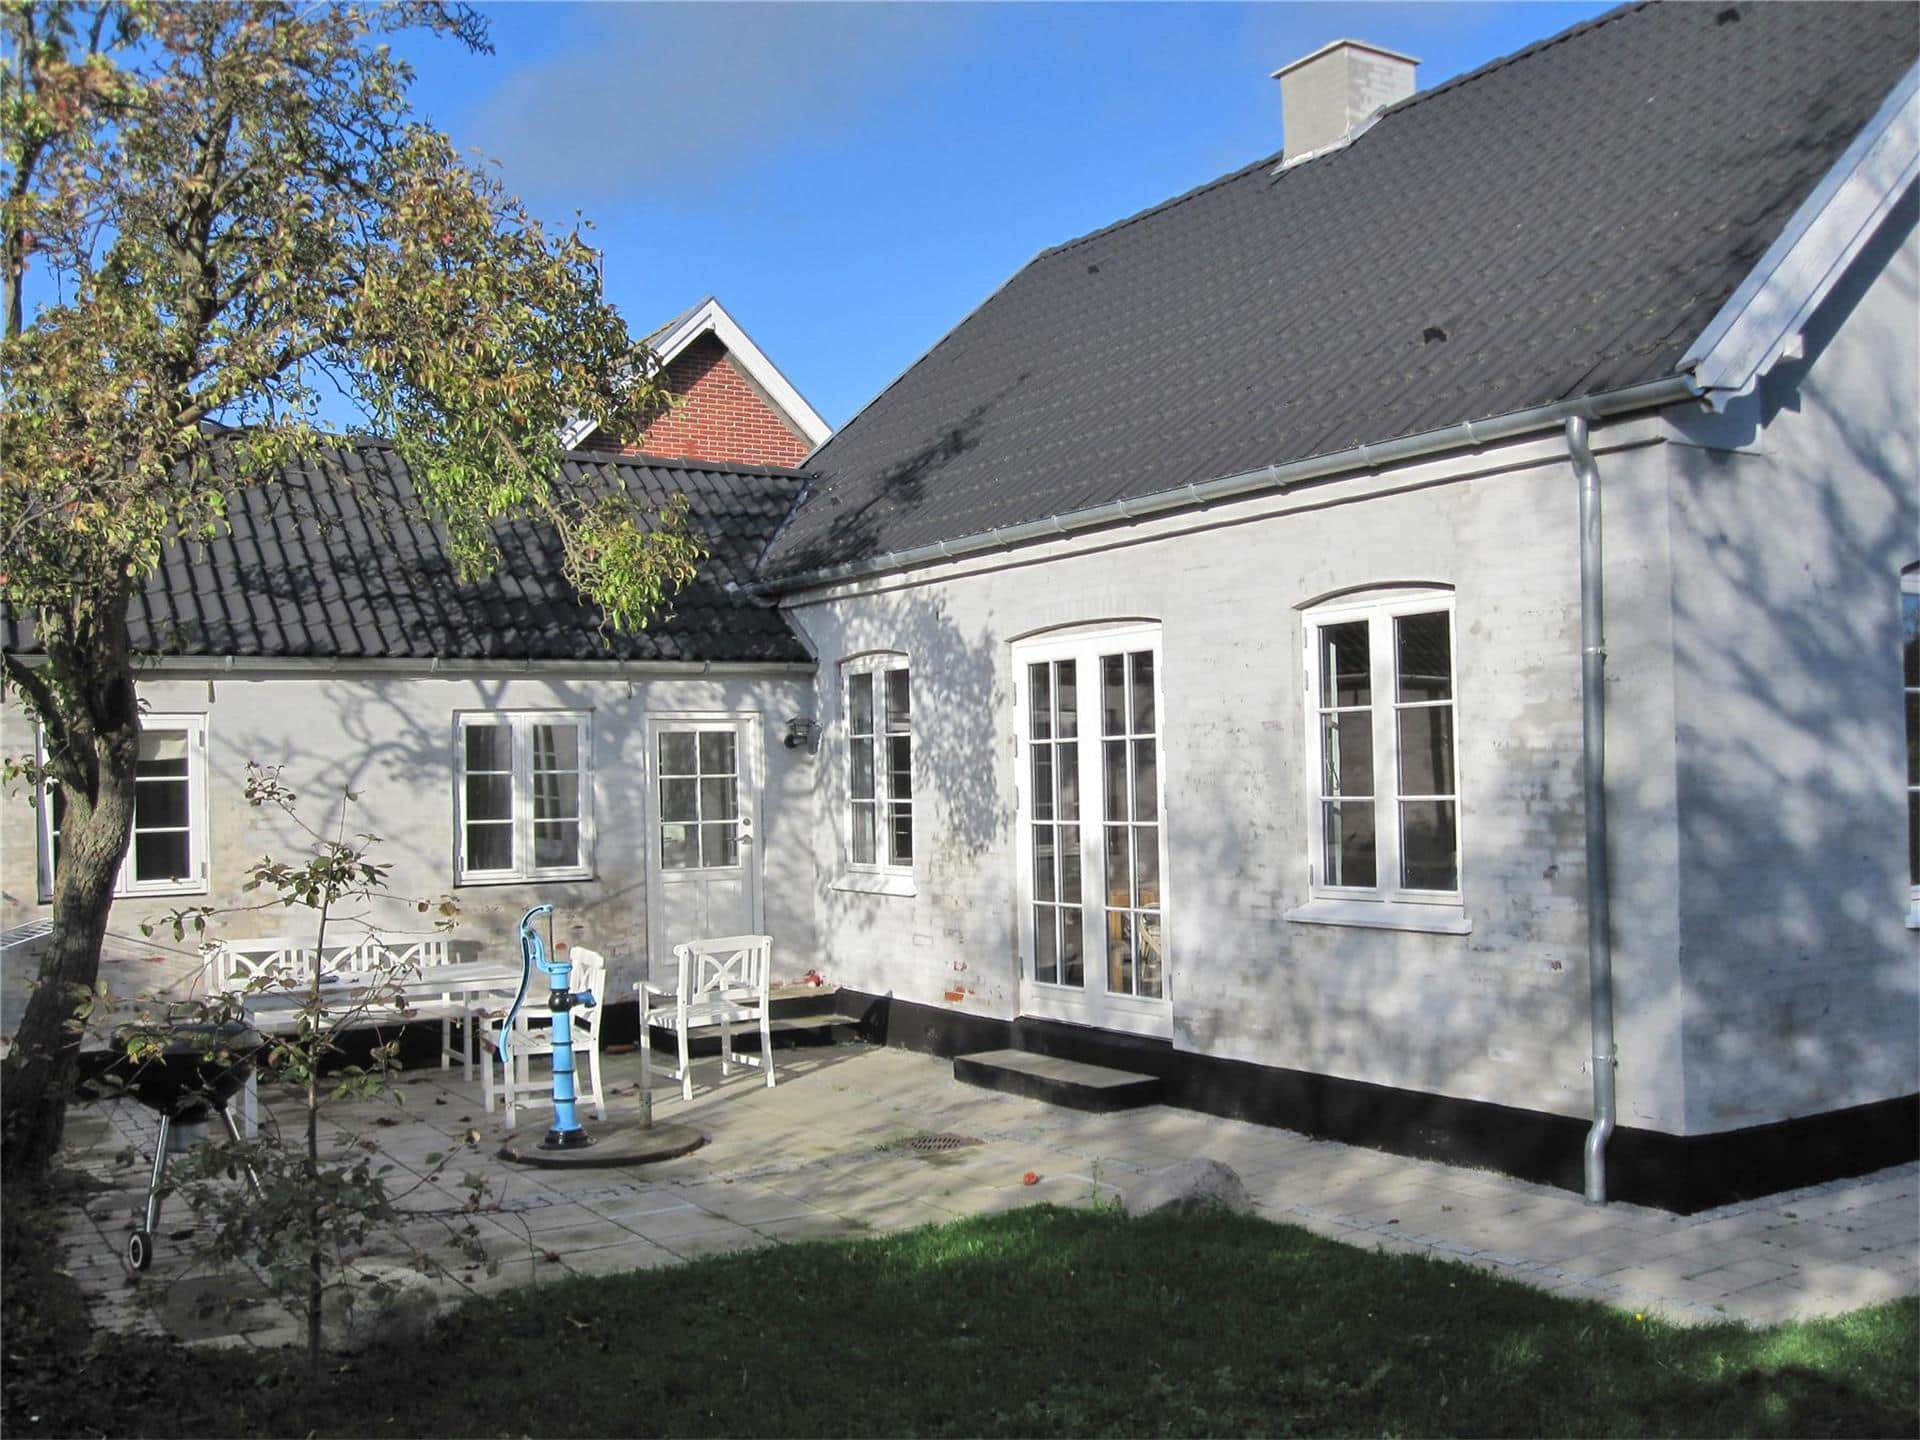 Image 0-3 Holiday-home M70179, Kærvej 10, DK - 5960 Marstal